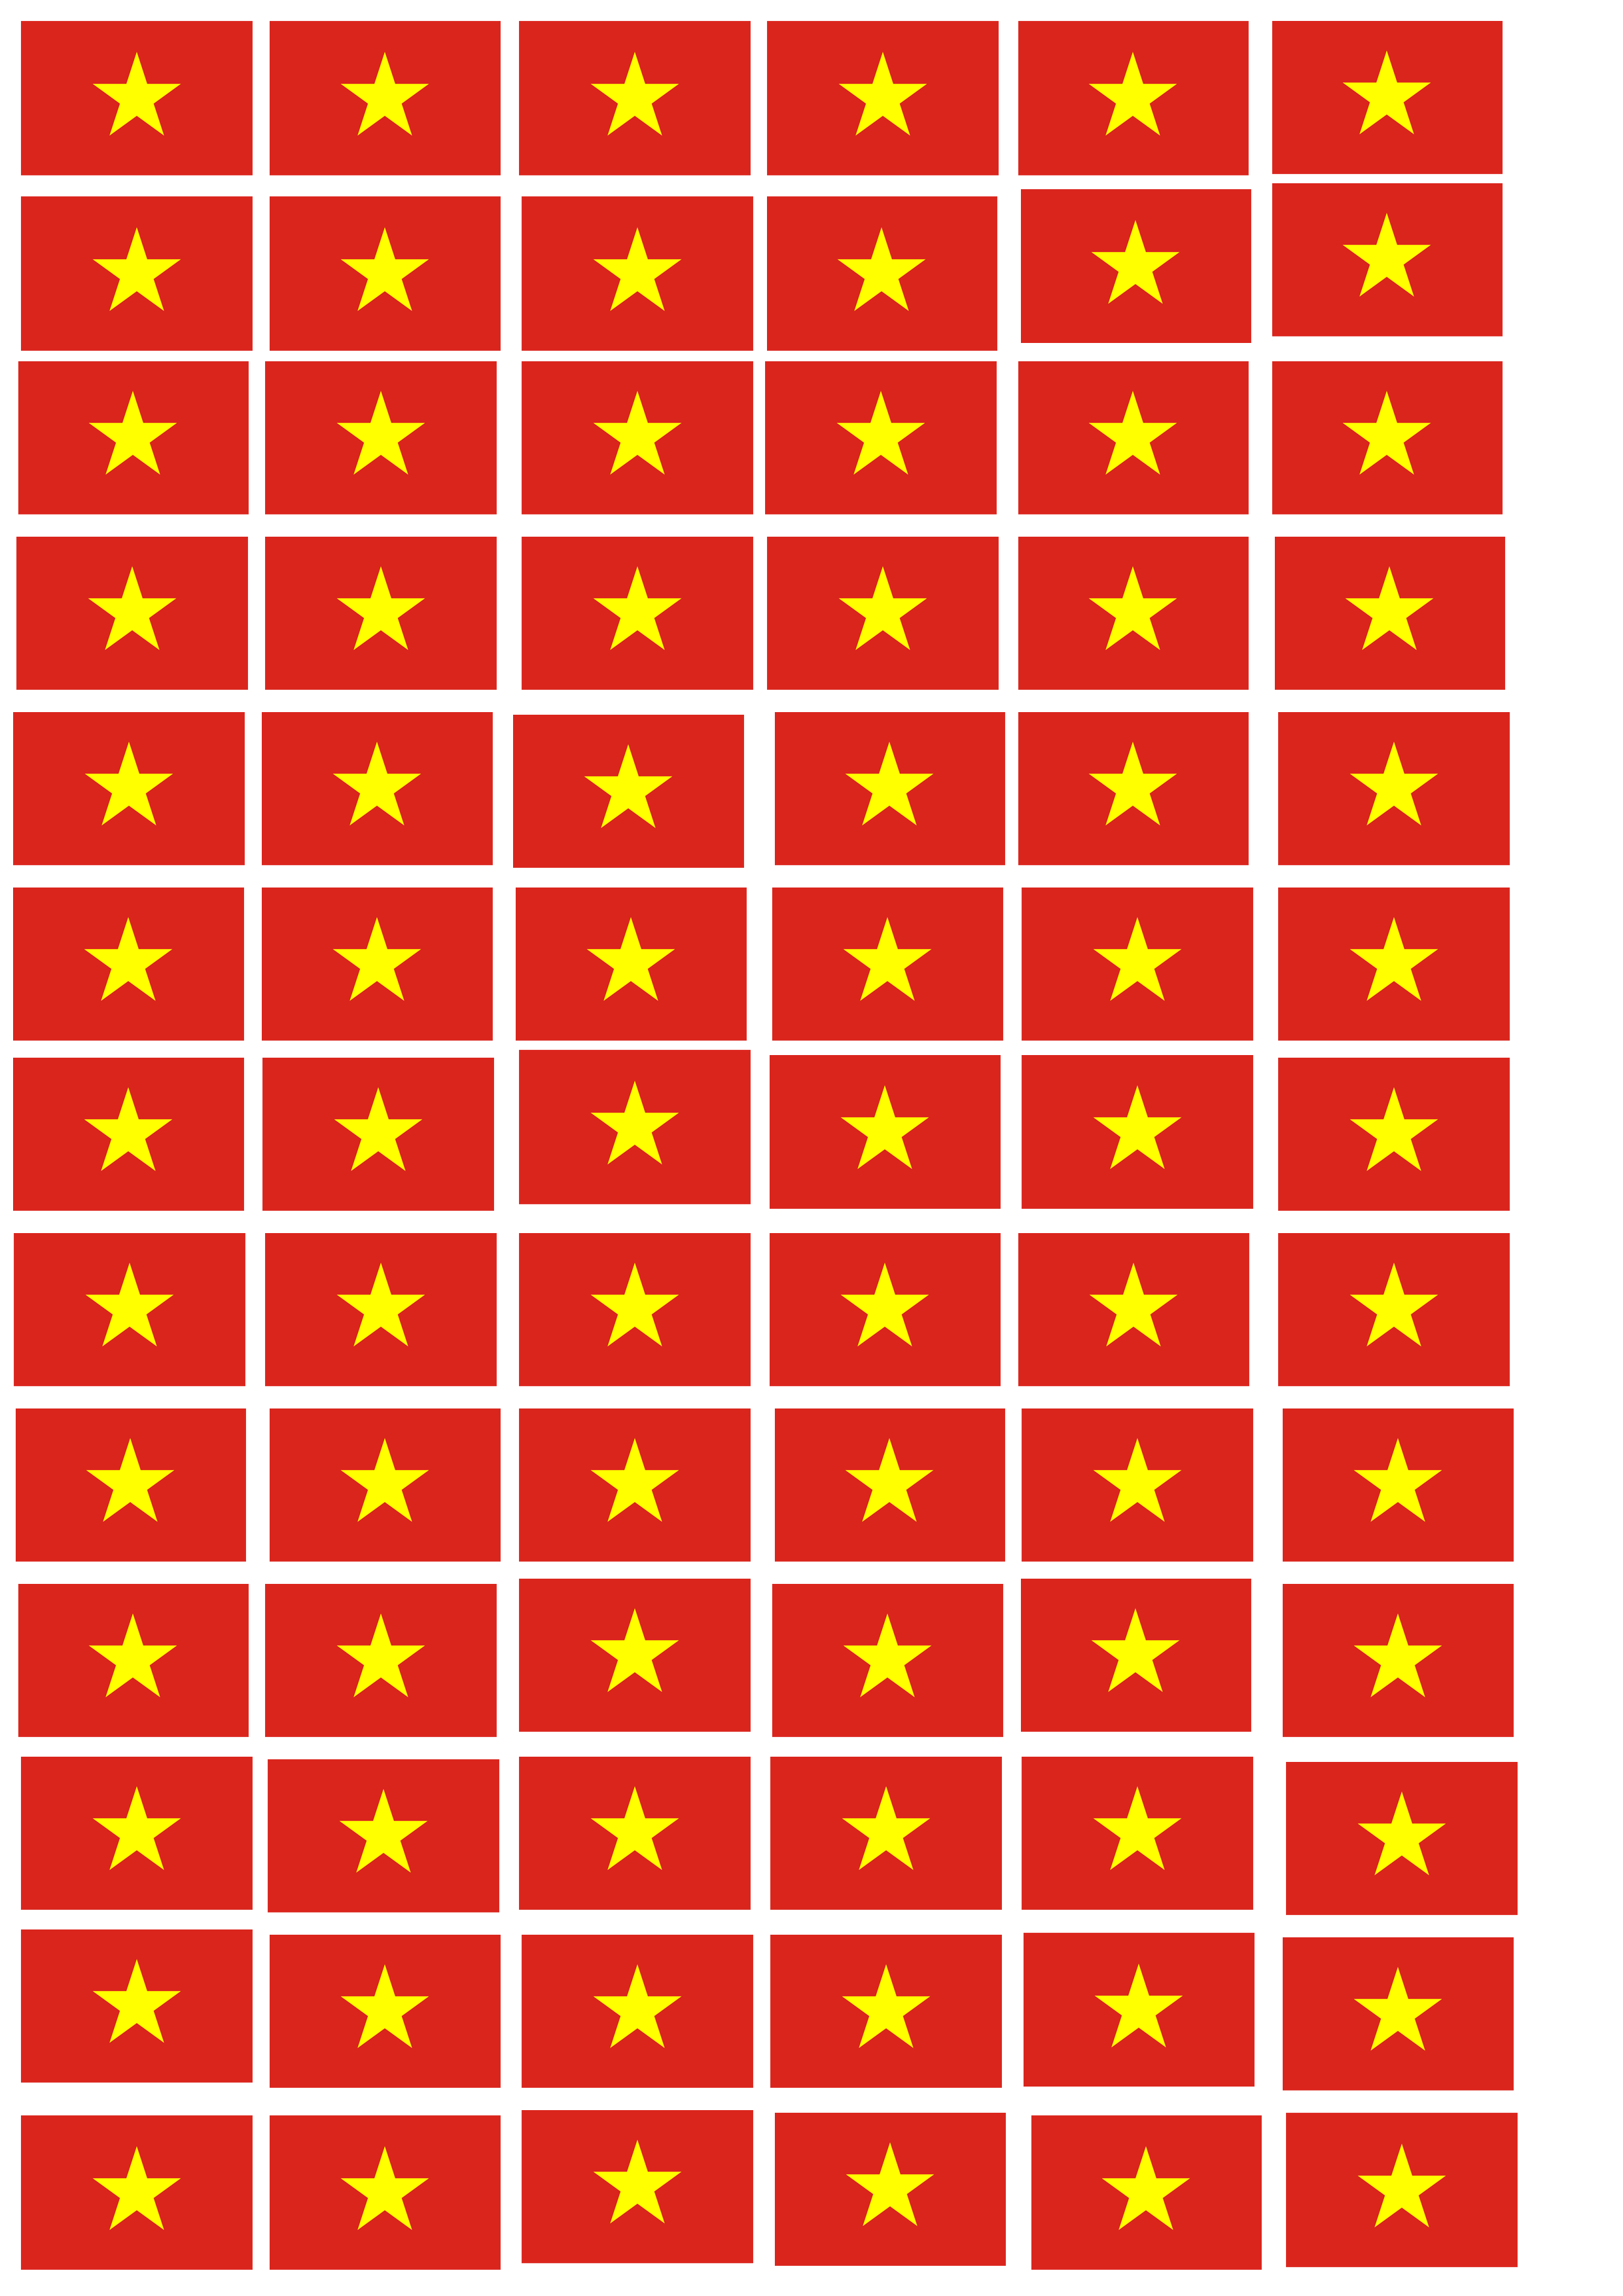 Bộ 50 sticker lá cờ Việt Nam là món quà ý nghĩa để tặng cho những người thân yêu, đồng nghiệp hoặc đối tác kinh doanh. Với nhiều kiểu dáng độc đáo và sáng tạo, bộ sticker này sẽ khiến người nhận cảm thấy tự hào khi nhìn thấy quốc kỳ Việt Nam.